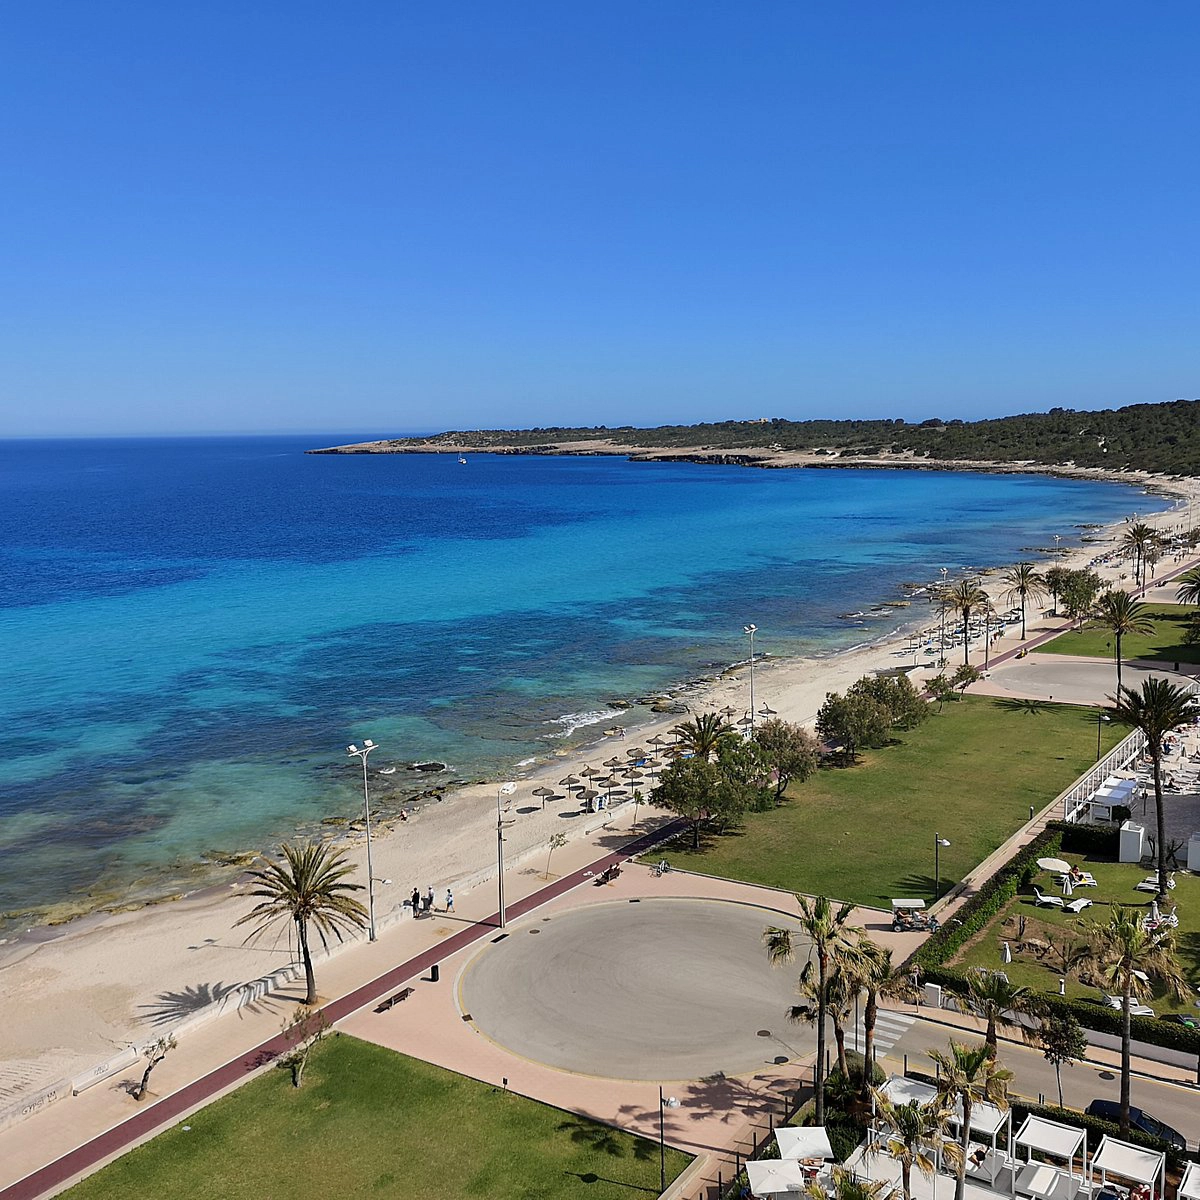  Cala Millor  strand - Mallorca